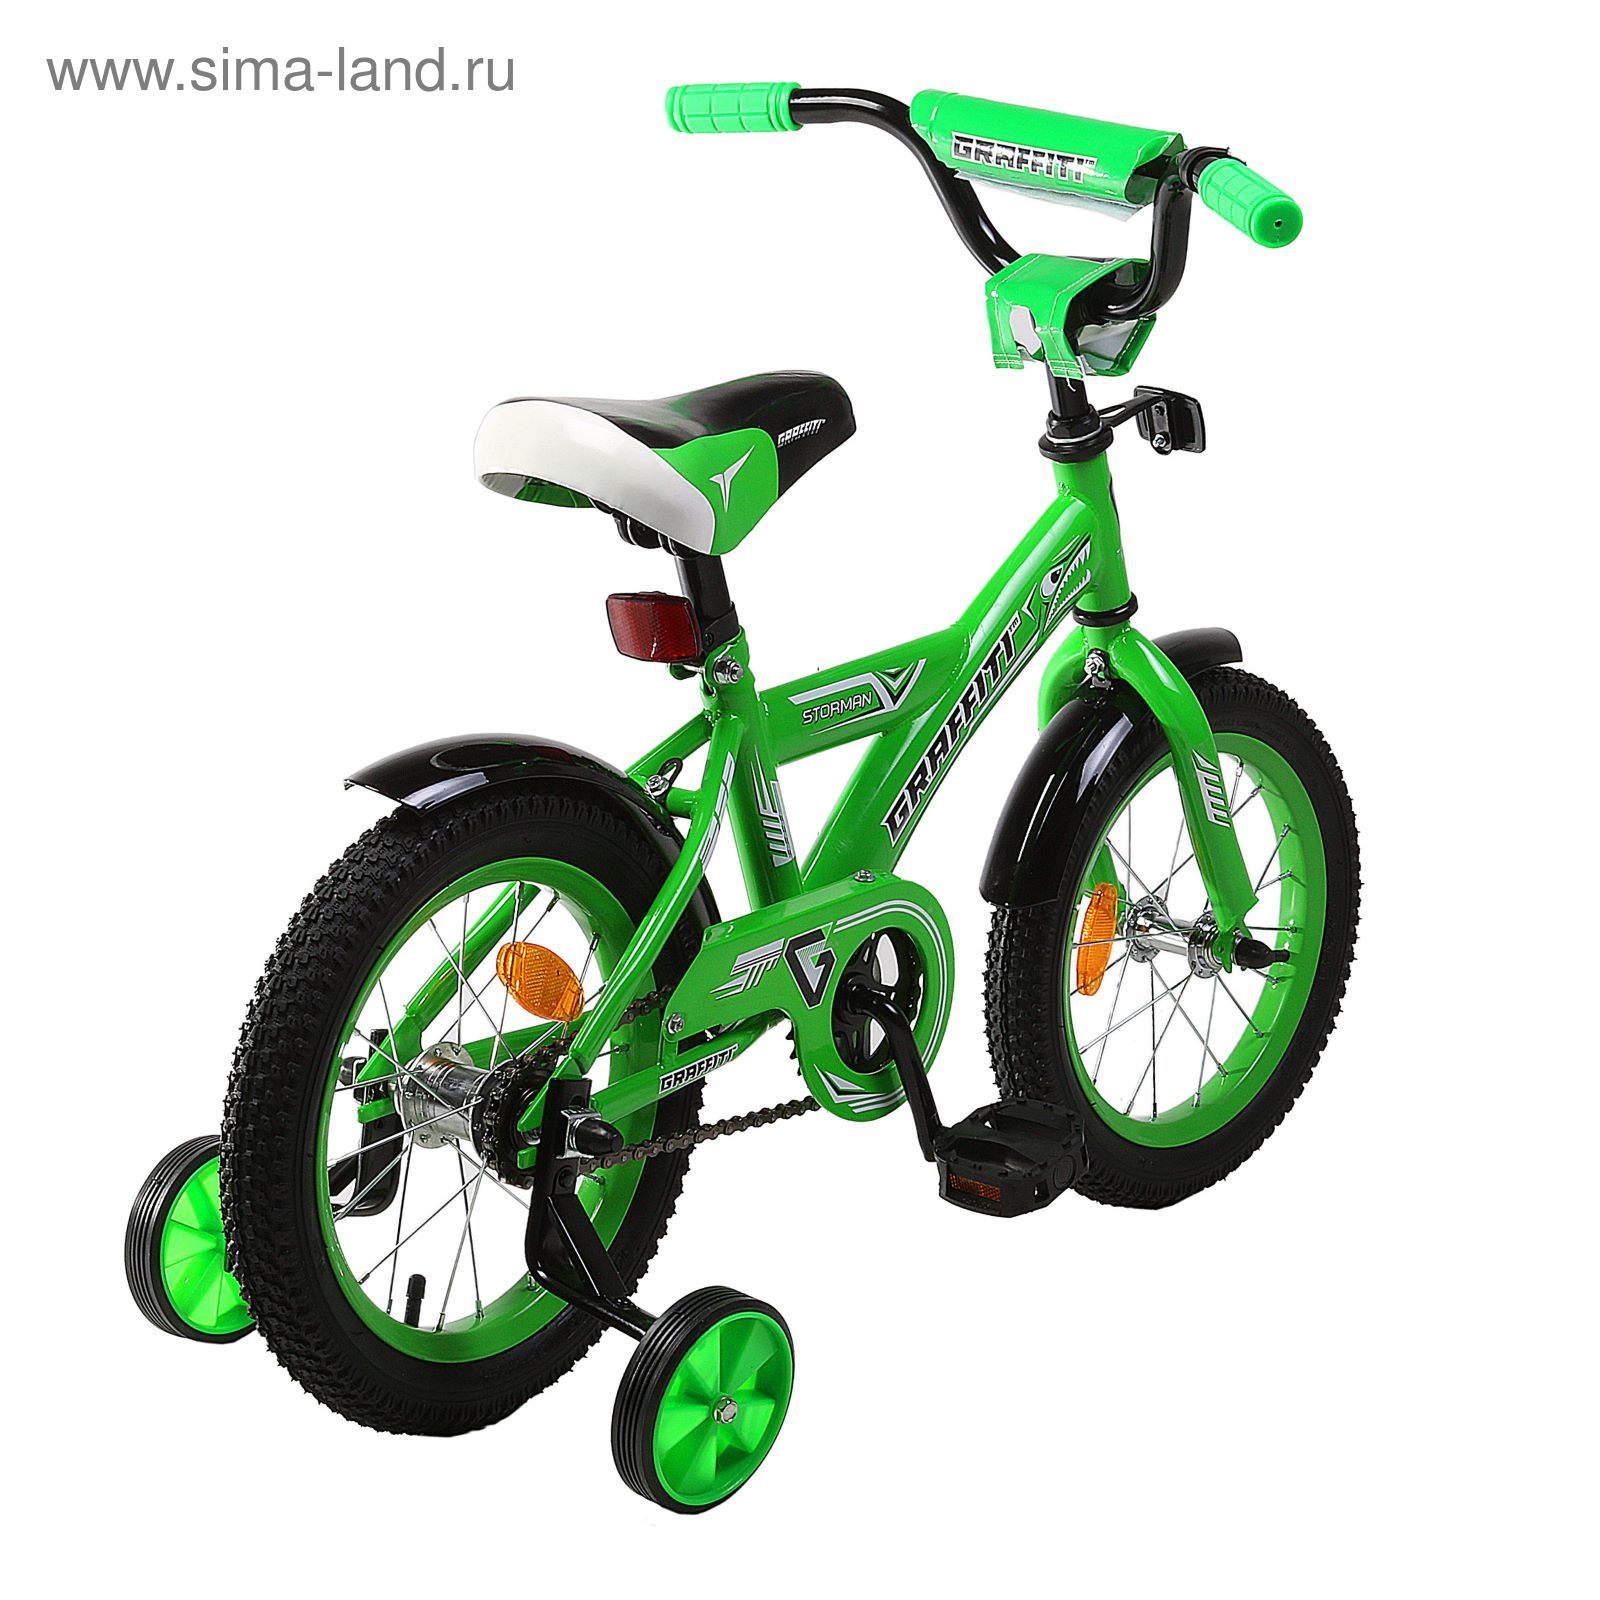 Велосипед 14" GRAFFITI Storman RUS, 2017, цвет зелёный